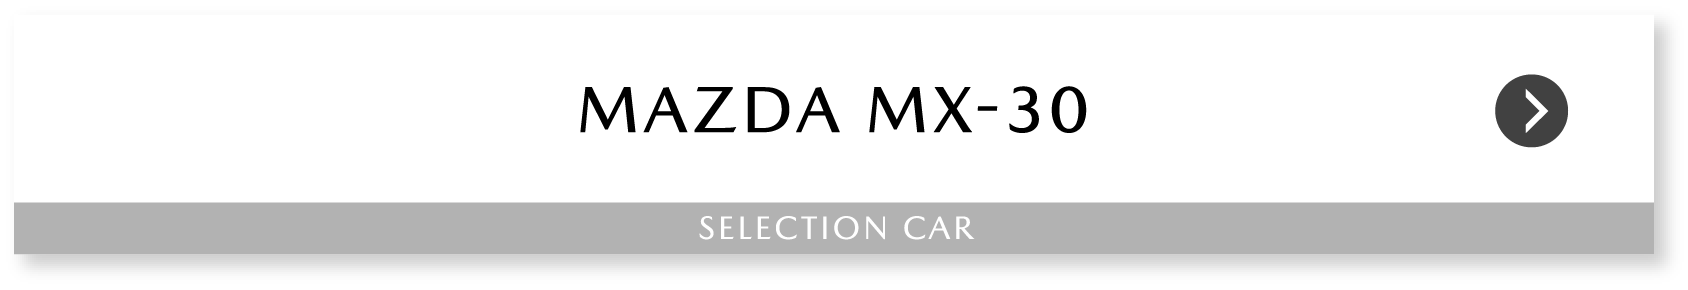 MAZDA MX-30